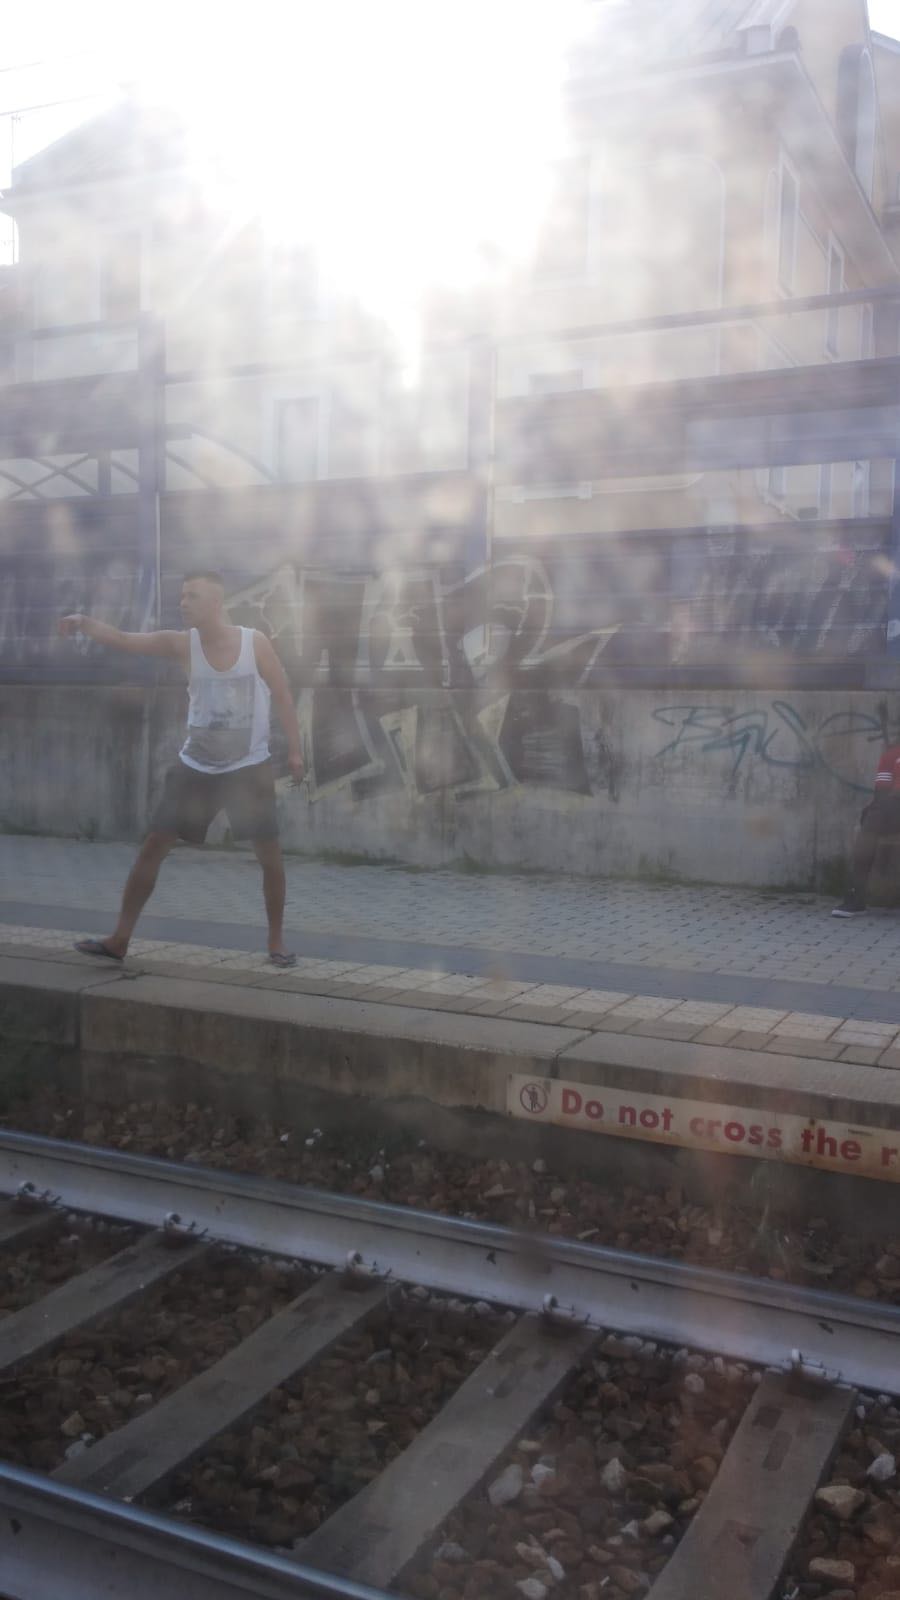 Carnate nordafricani cacciati dal treno lanciano sassi contro finestrini in stazione